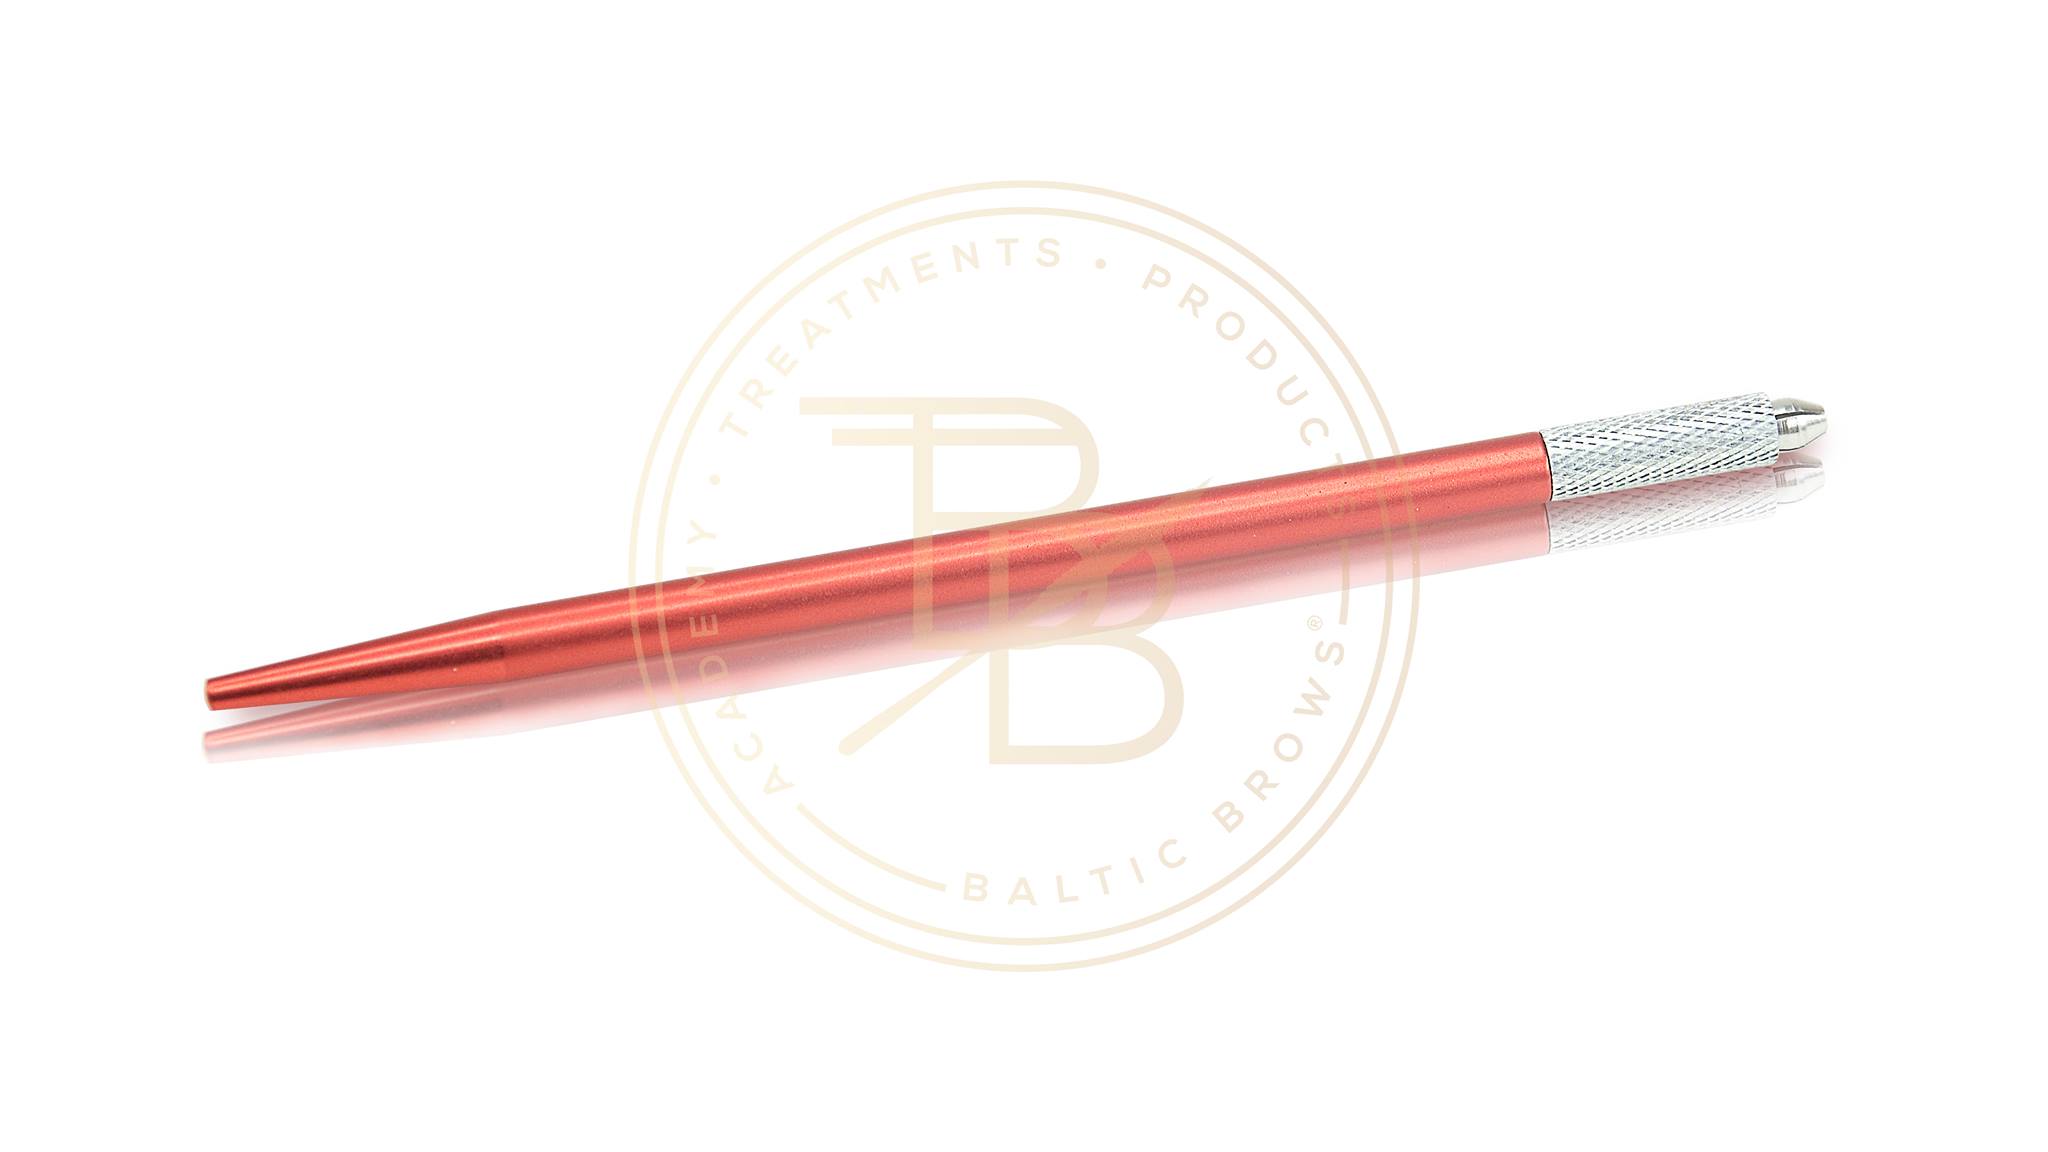 Baltic Brows® manual shading tool